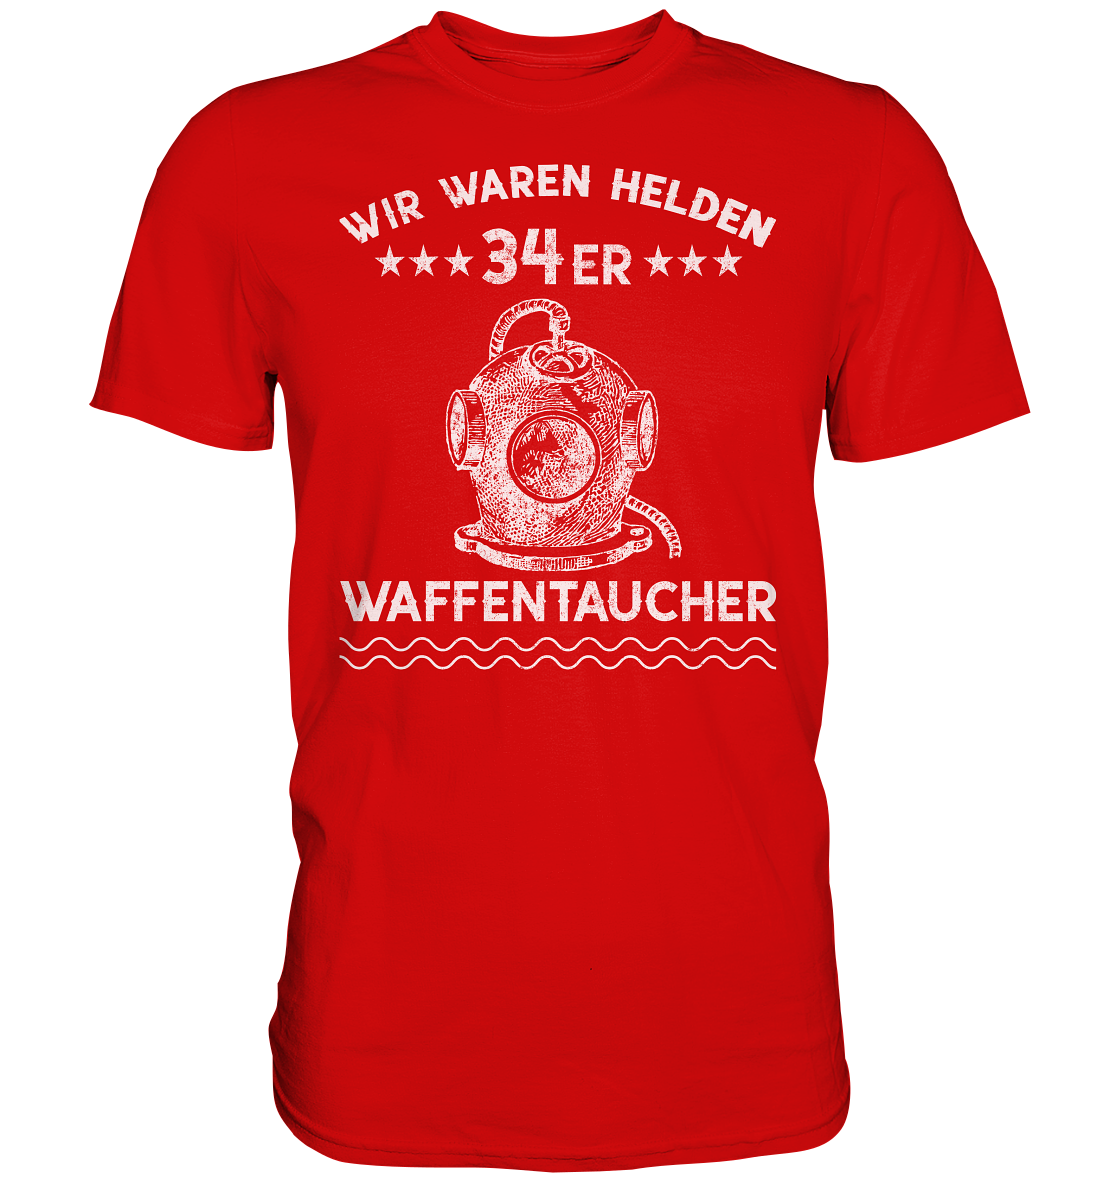 WAFFENTAUCHER - Wir waren Helden  - Premium Shirt